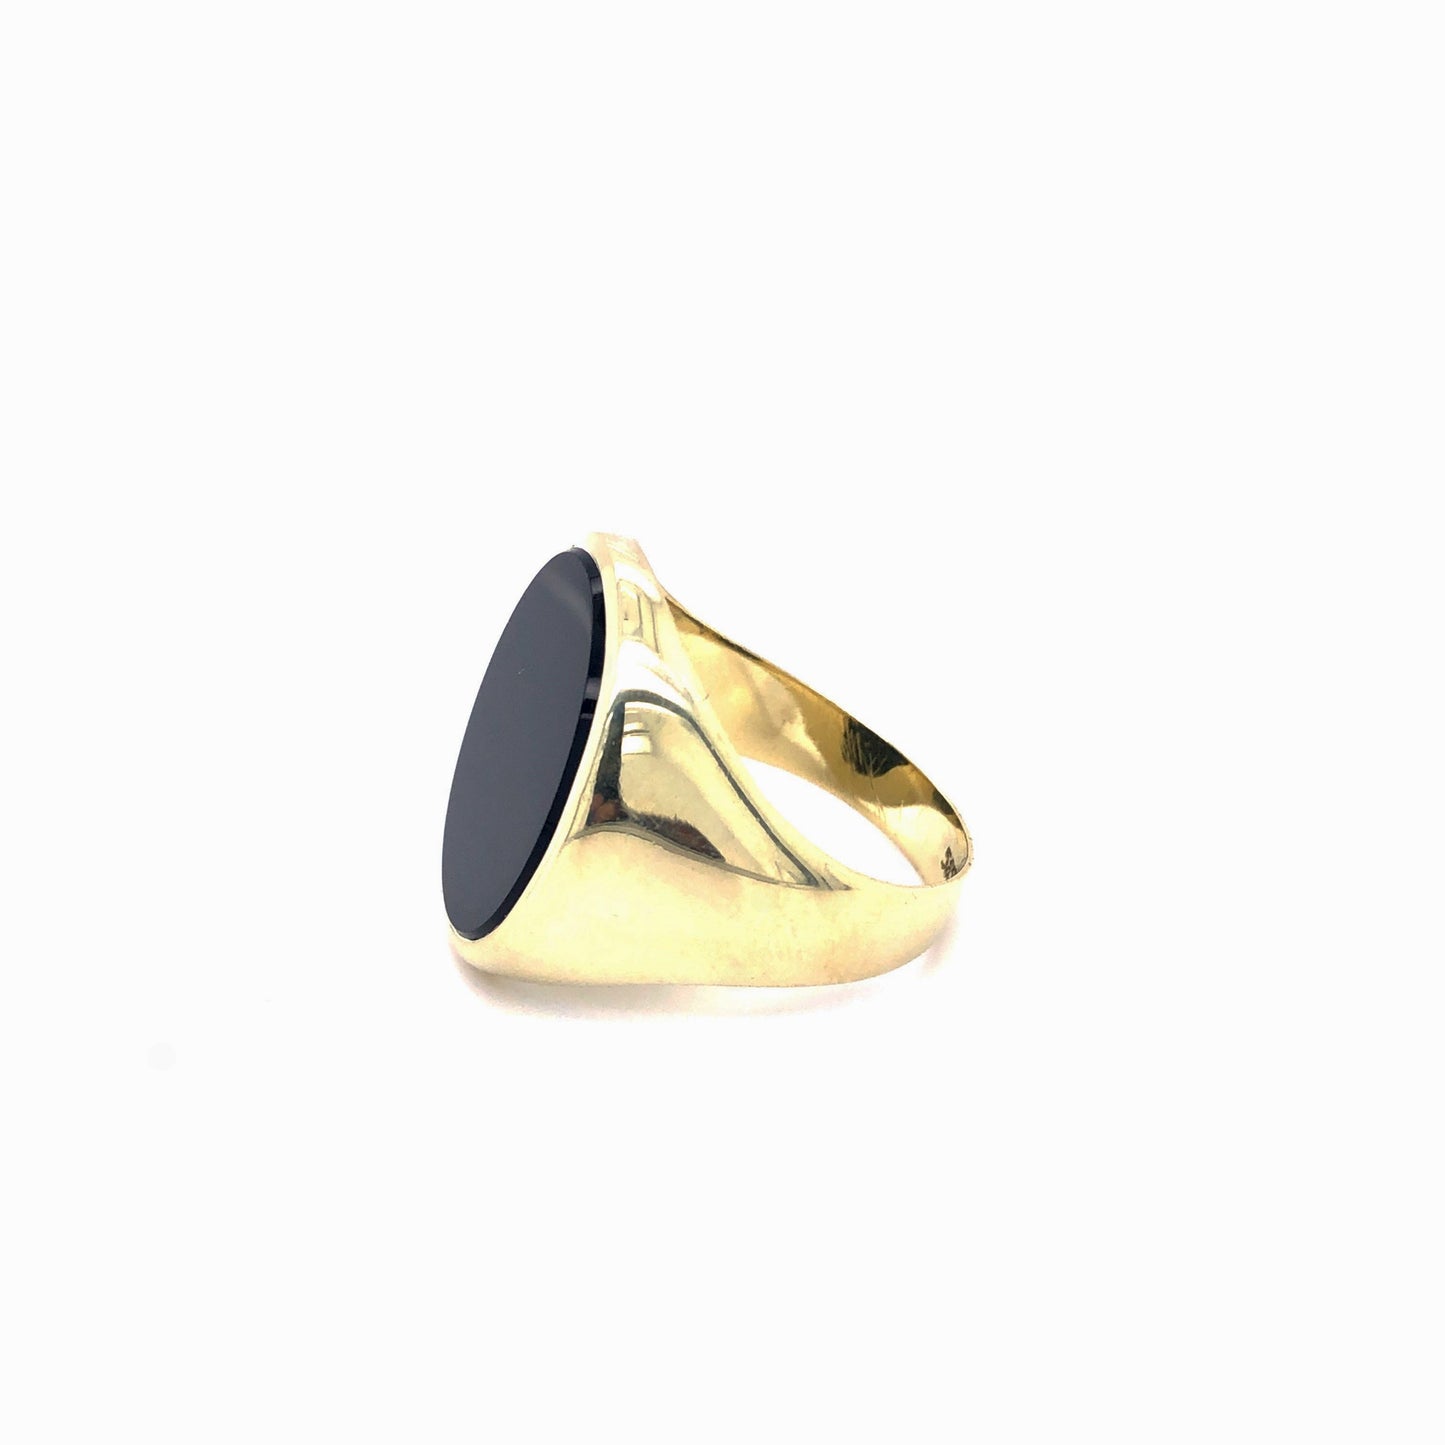 Ring Gold 585 / 14k Herrenring mit Onyx